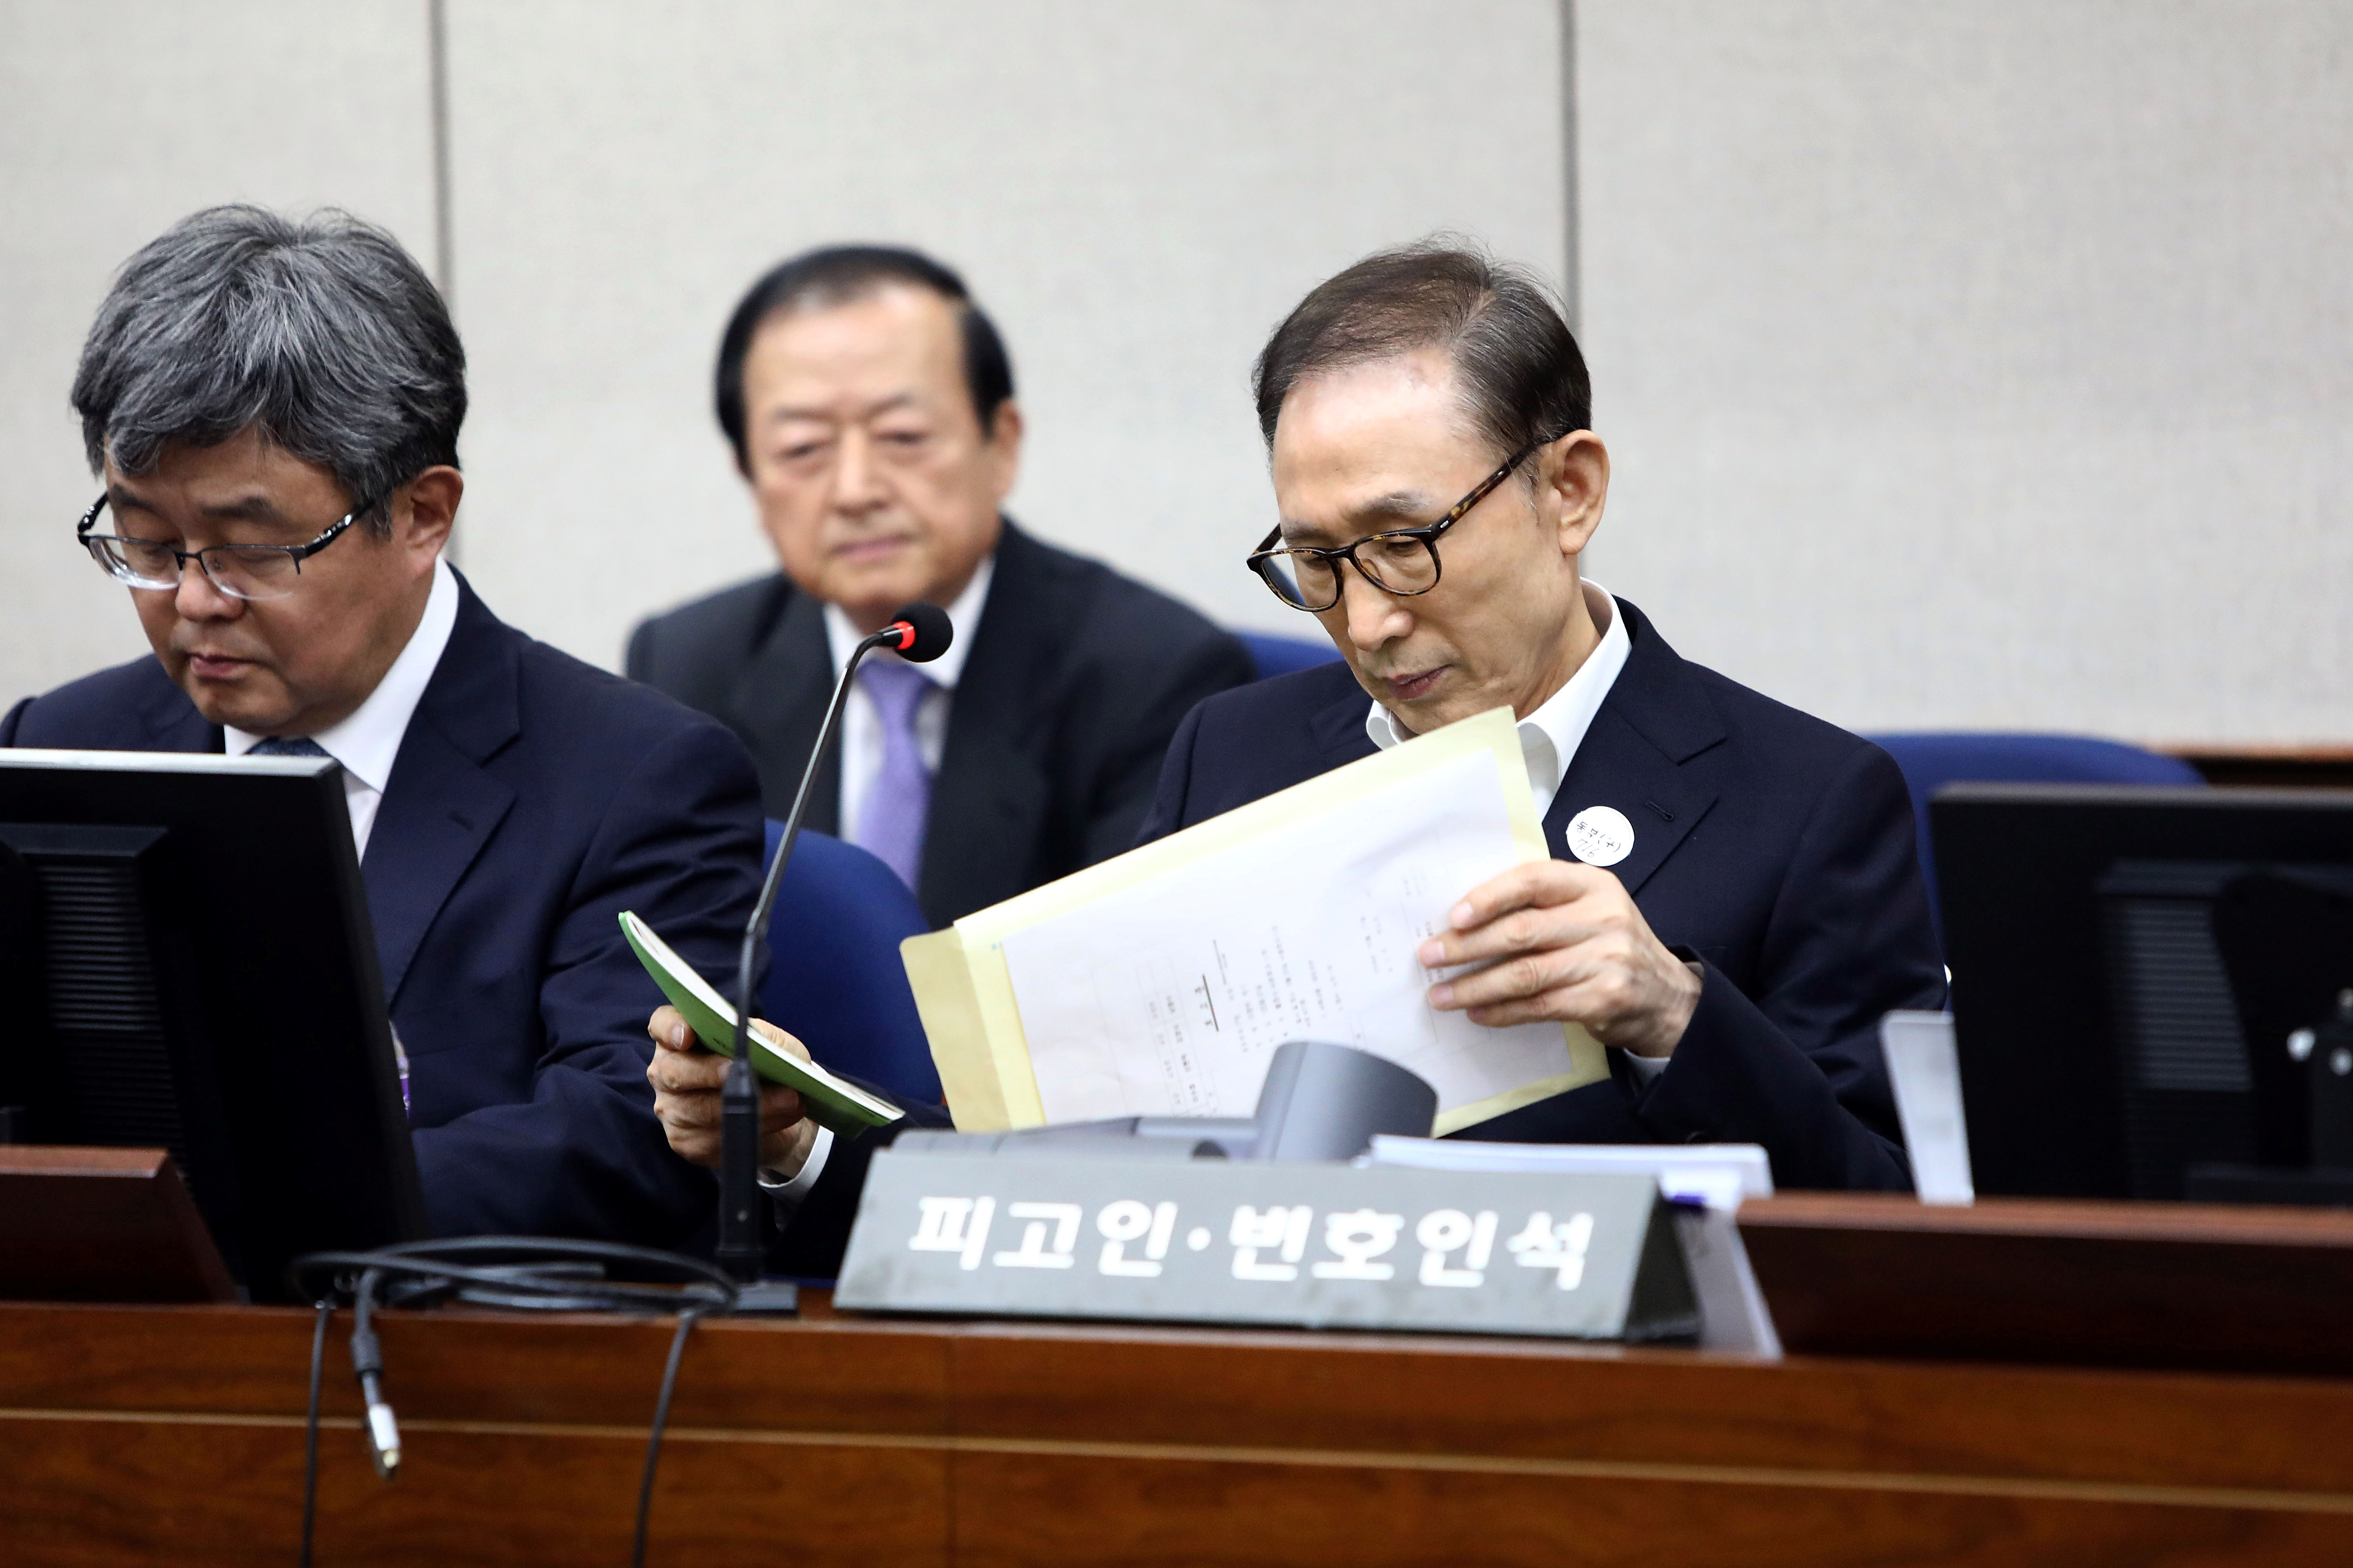 رئيس كوريا الجنوبية الأسبق خلال جلسة محاكمته بتهم فساد